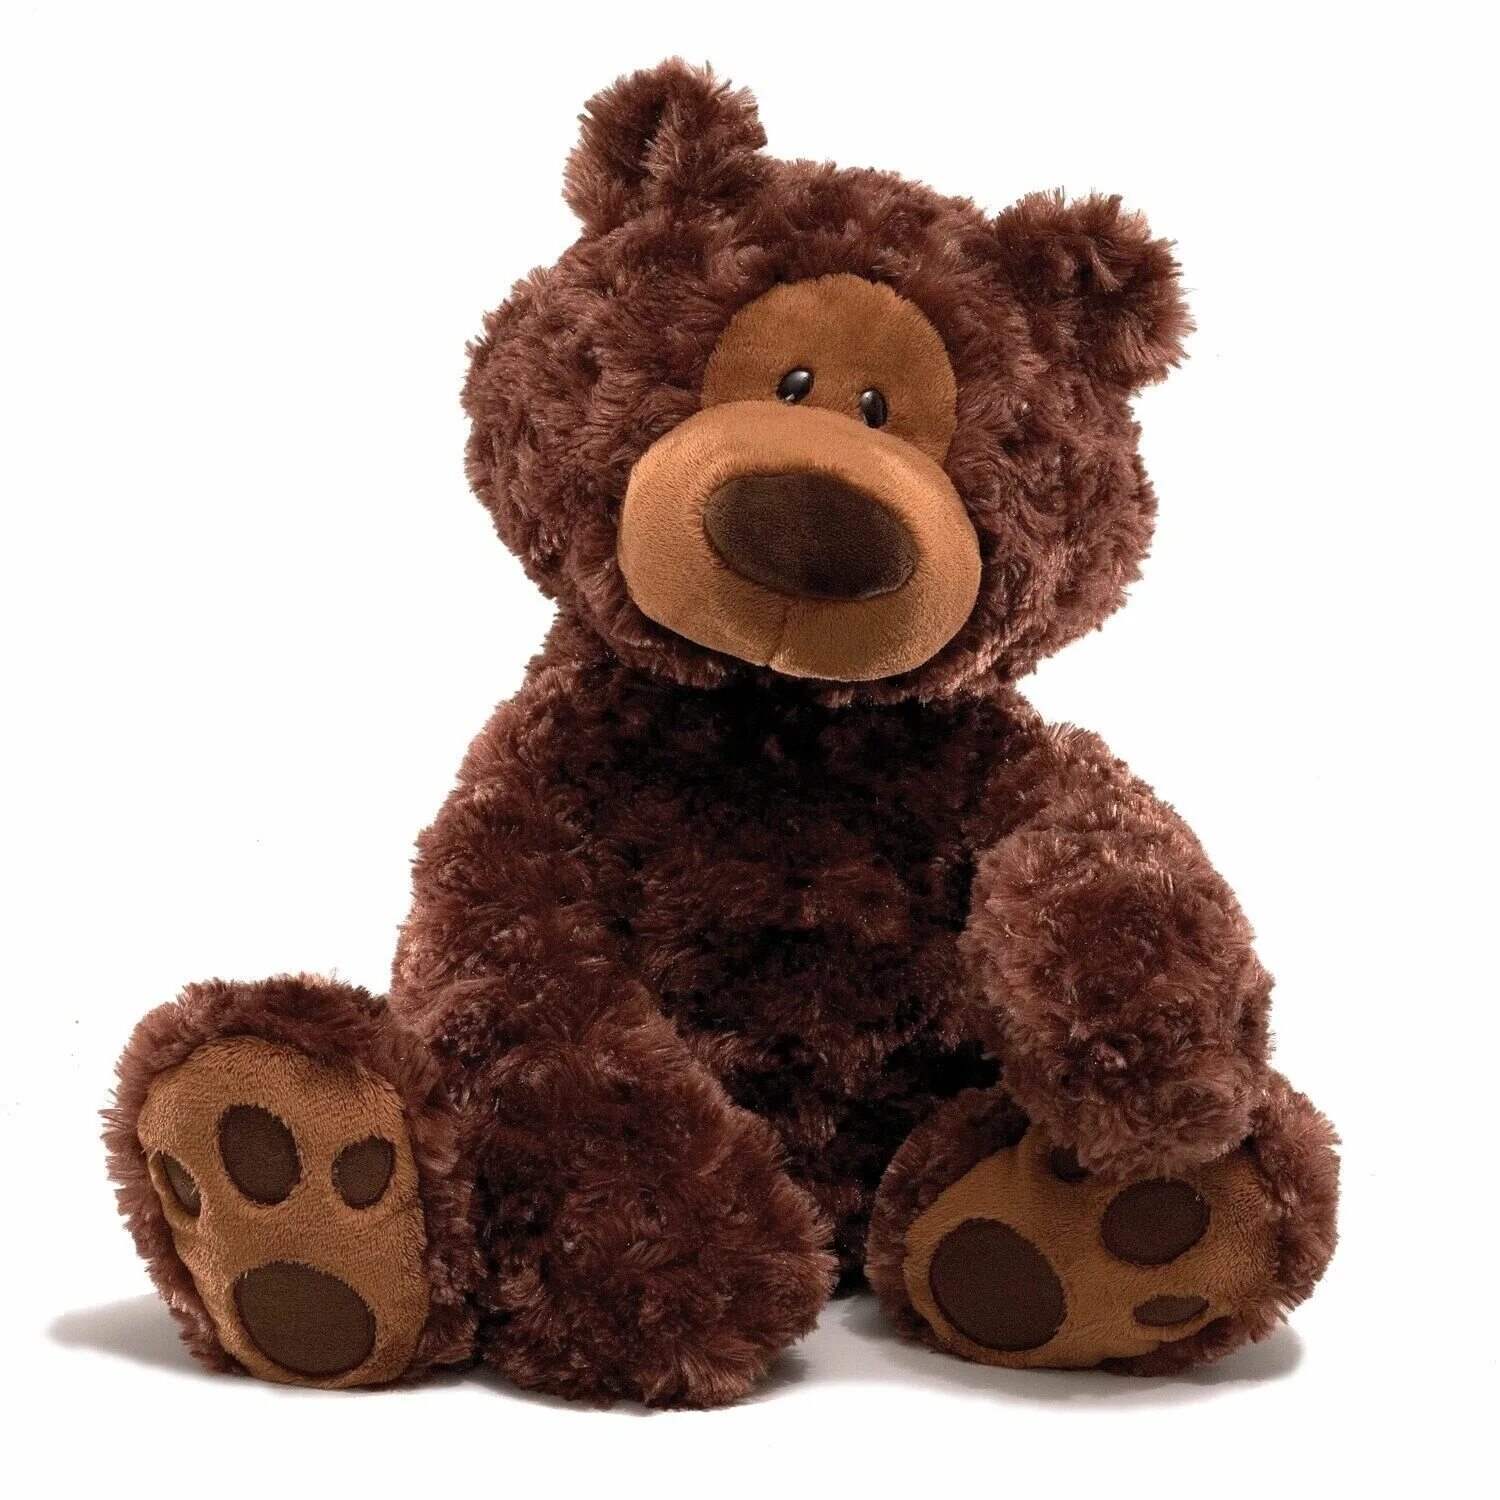 Плюшевый медведь Teddy Bear. Мишка Gund. Gund мягкая игрушка. Тедди Беар игрушка.